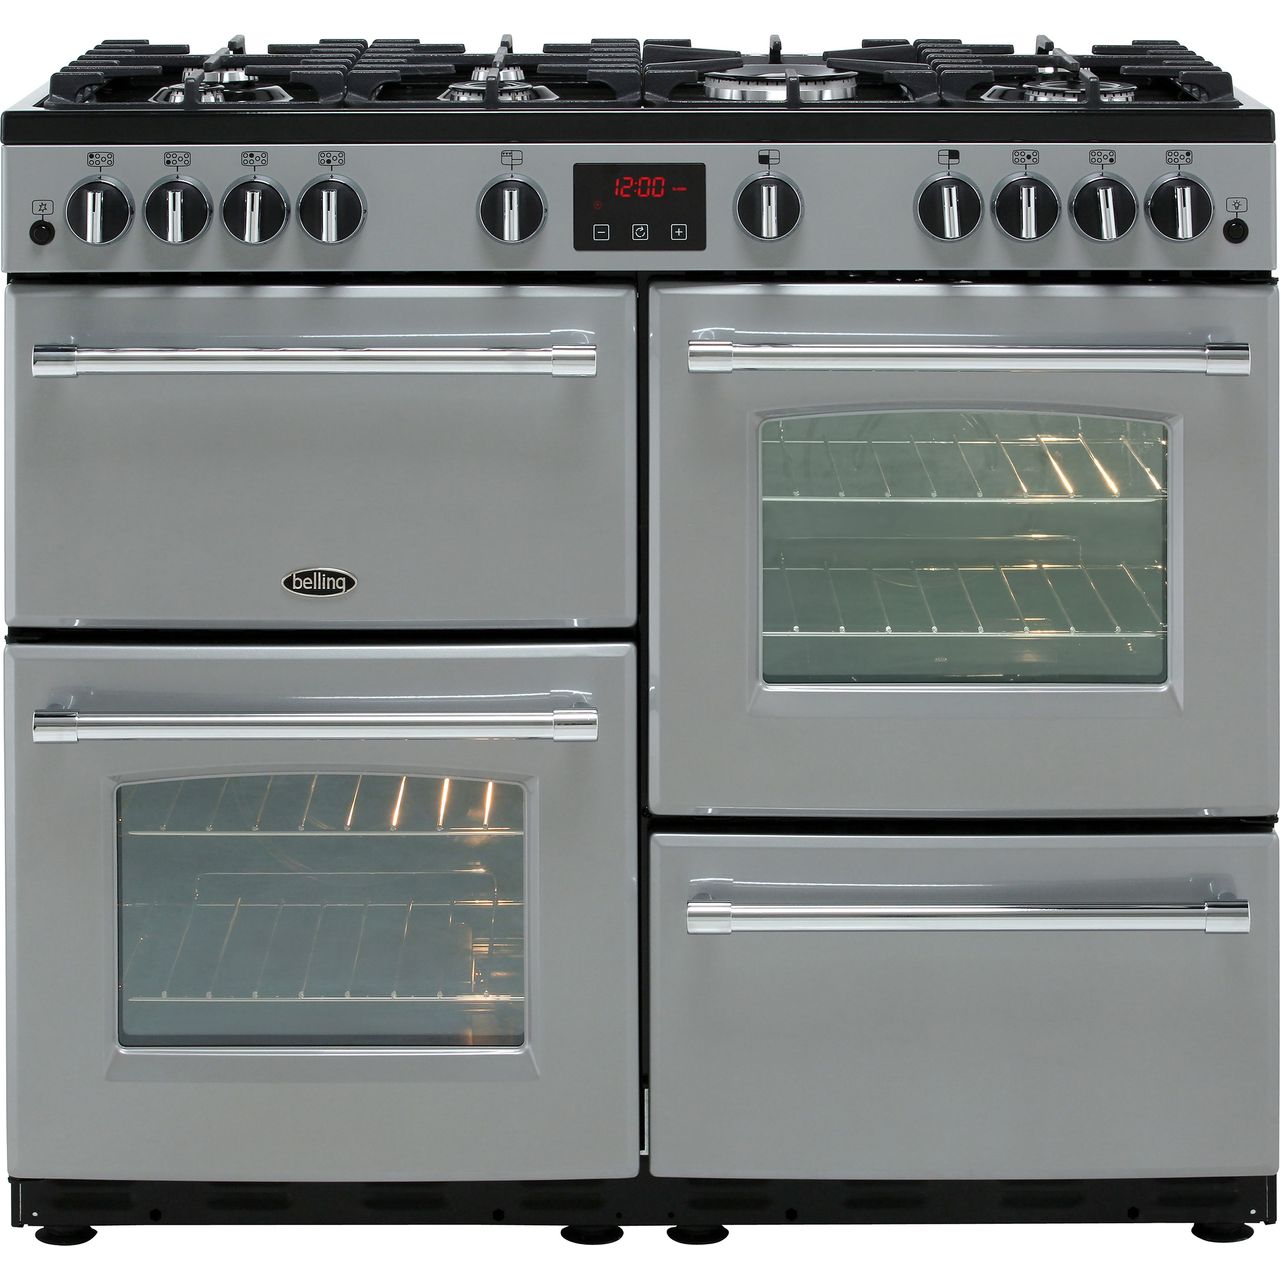 Cookcentre90G_BK | Belling range cooker